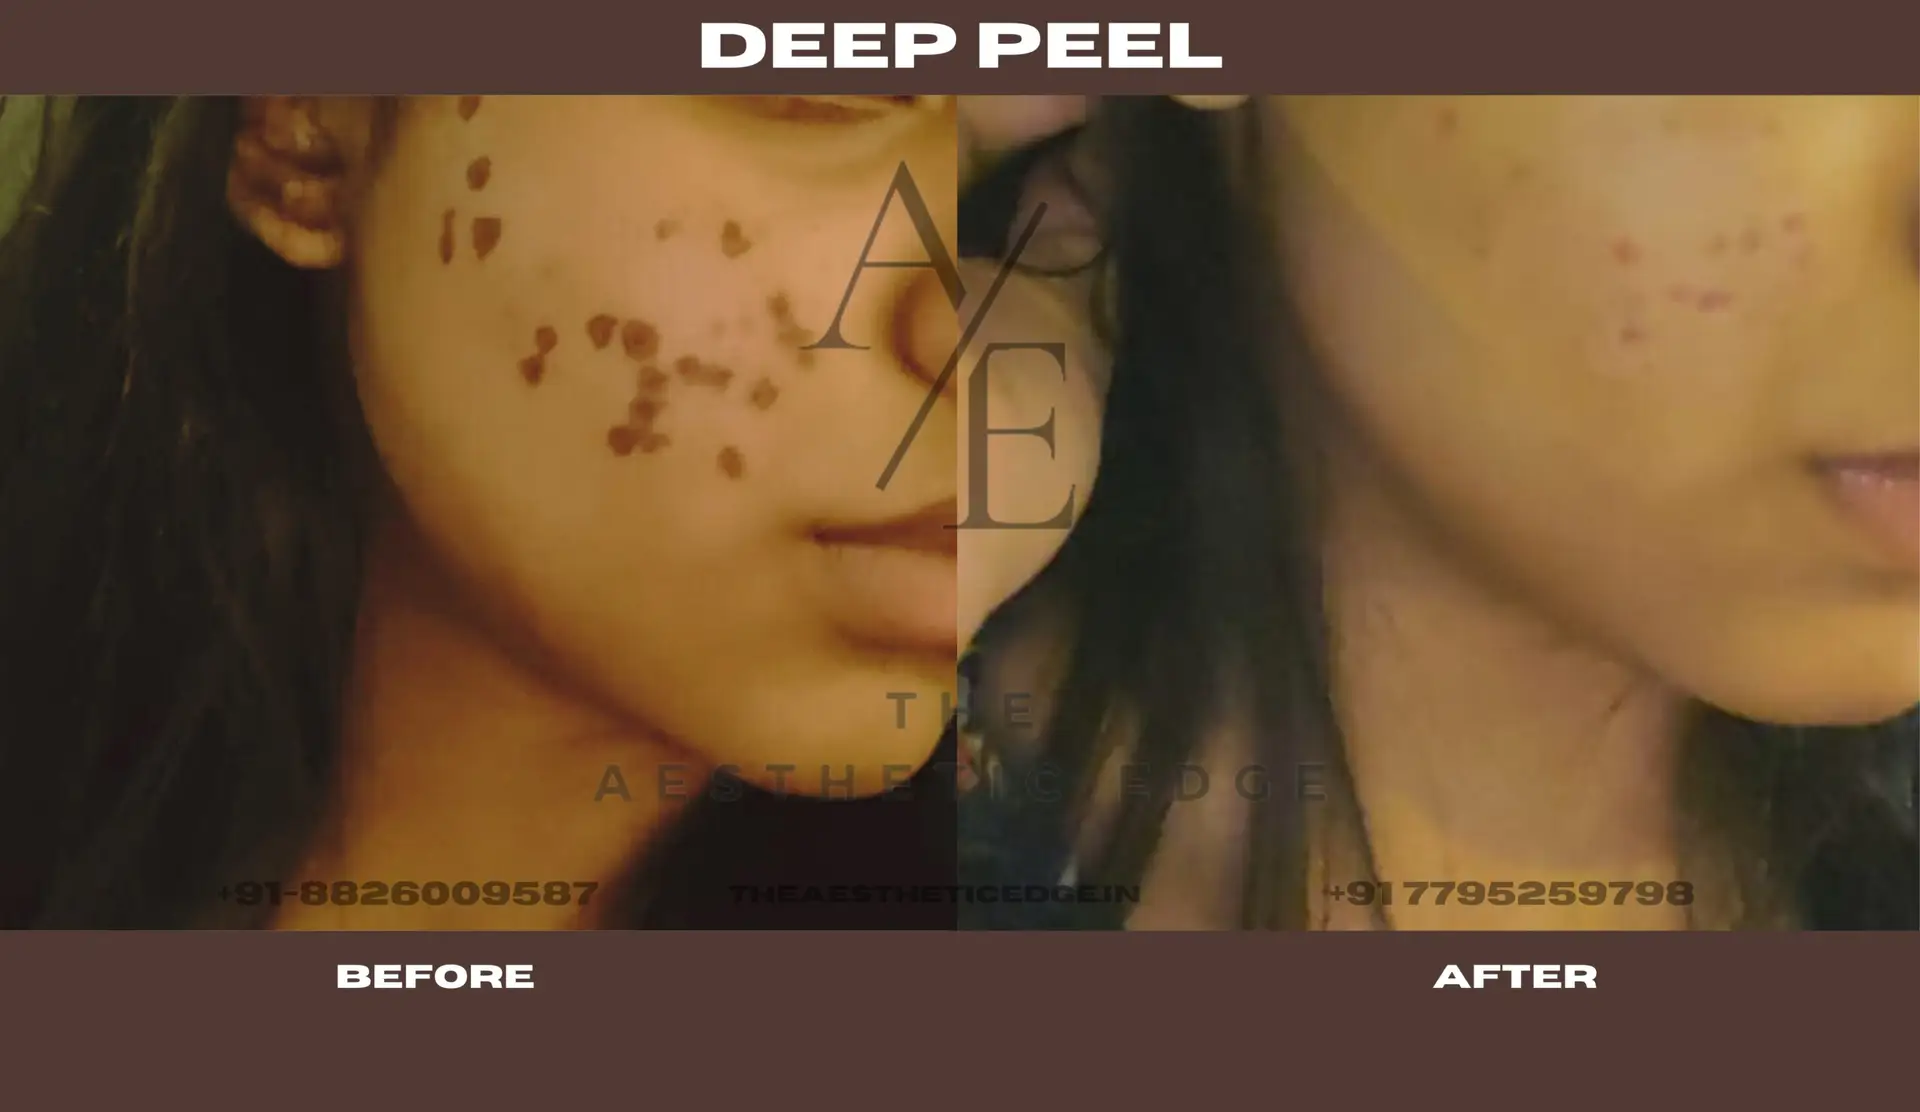 Deep peel results